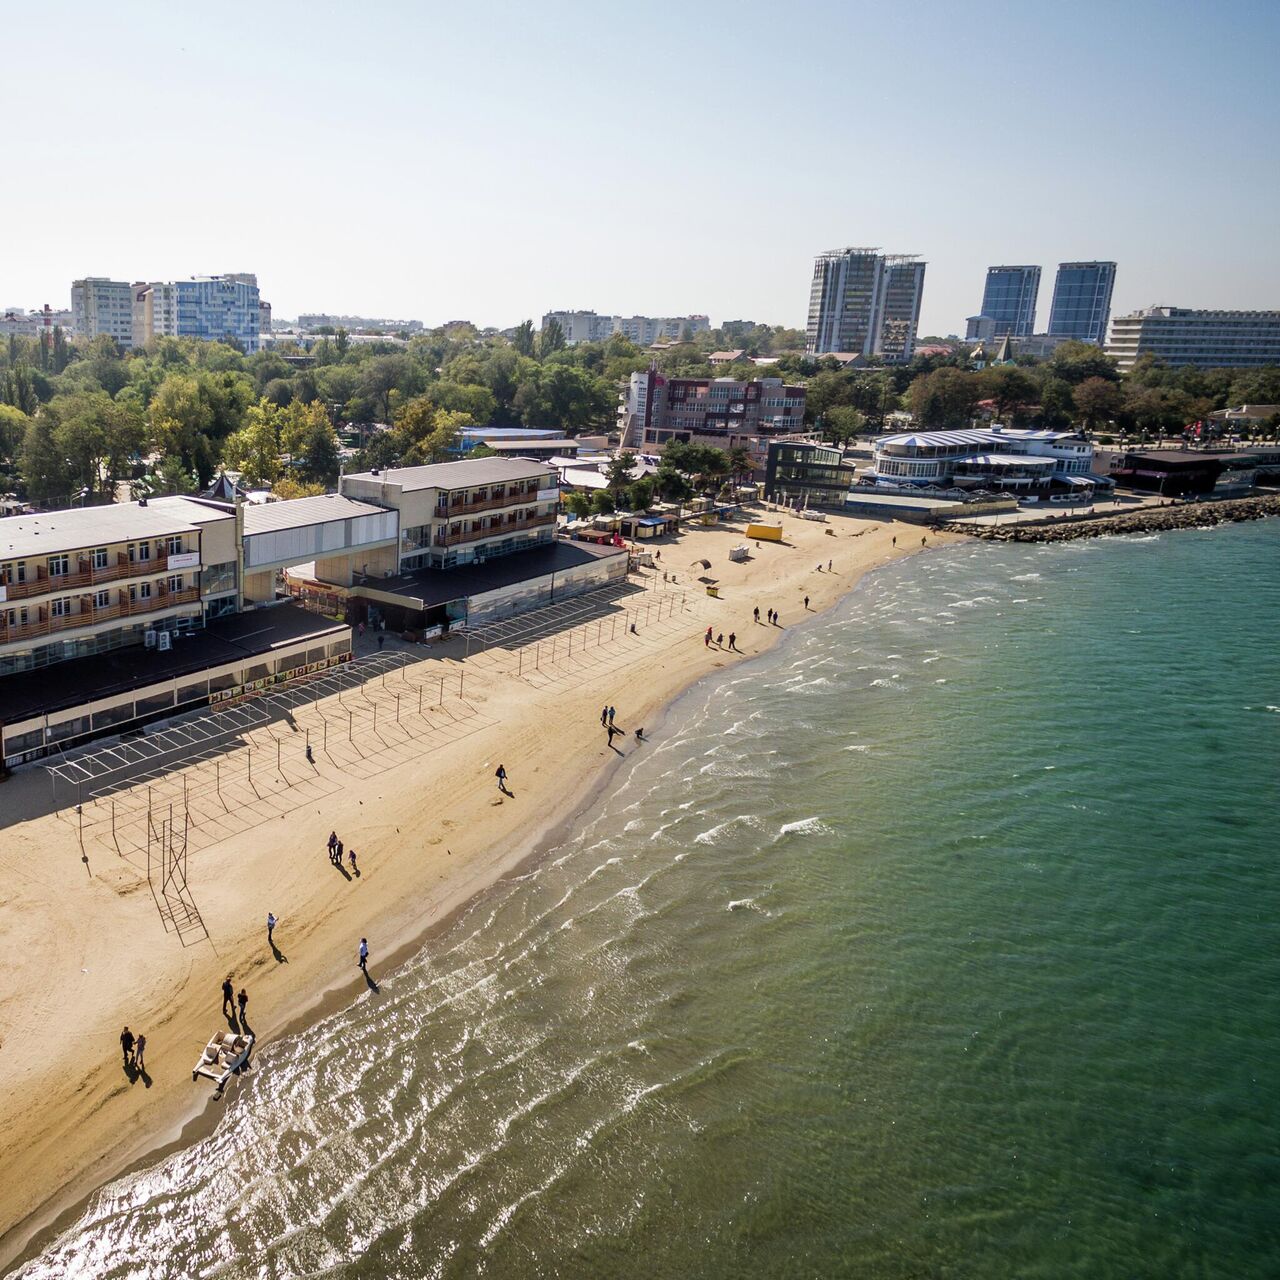 Нудистские пляжи Крыма: секретные места для отдыха без комплексов (ФОТО)